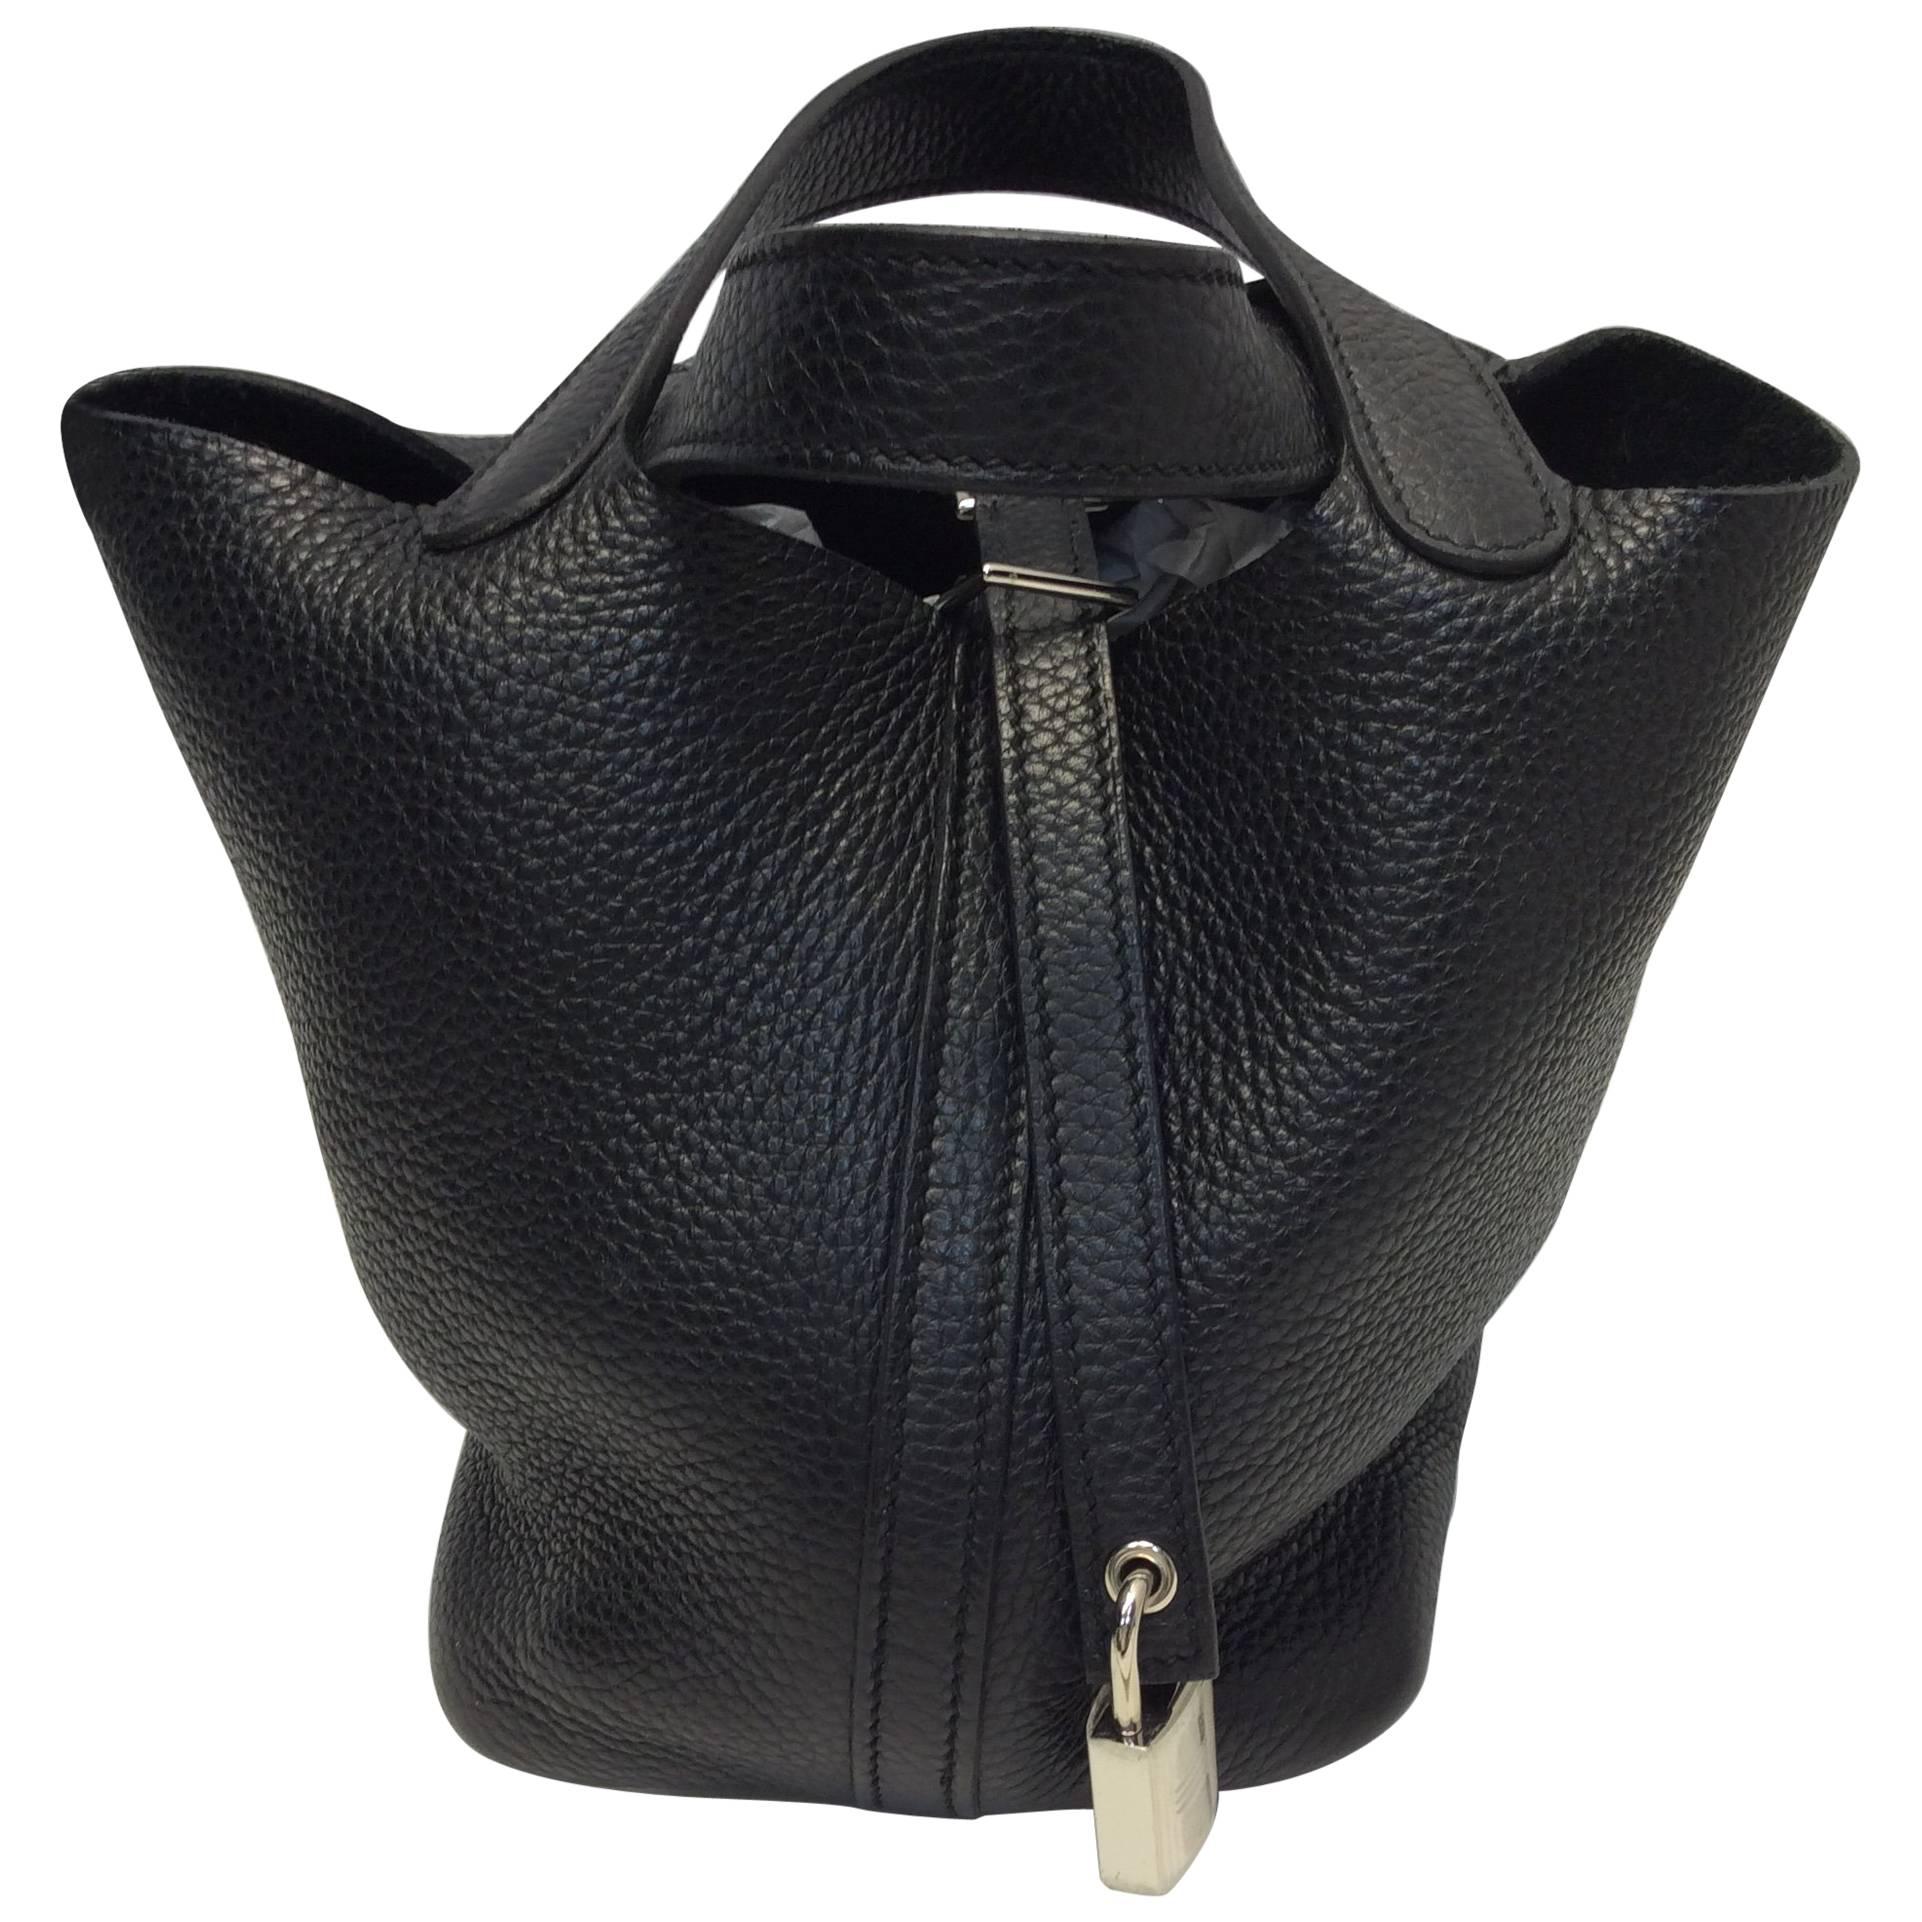 Hermes Picotin Black Leather Small Bag